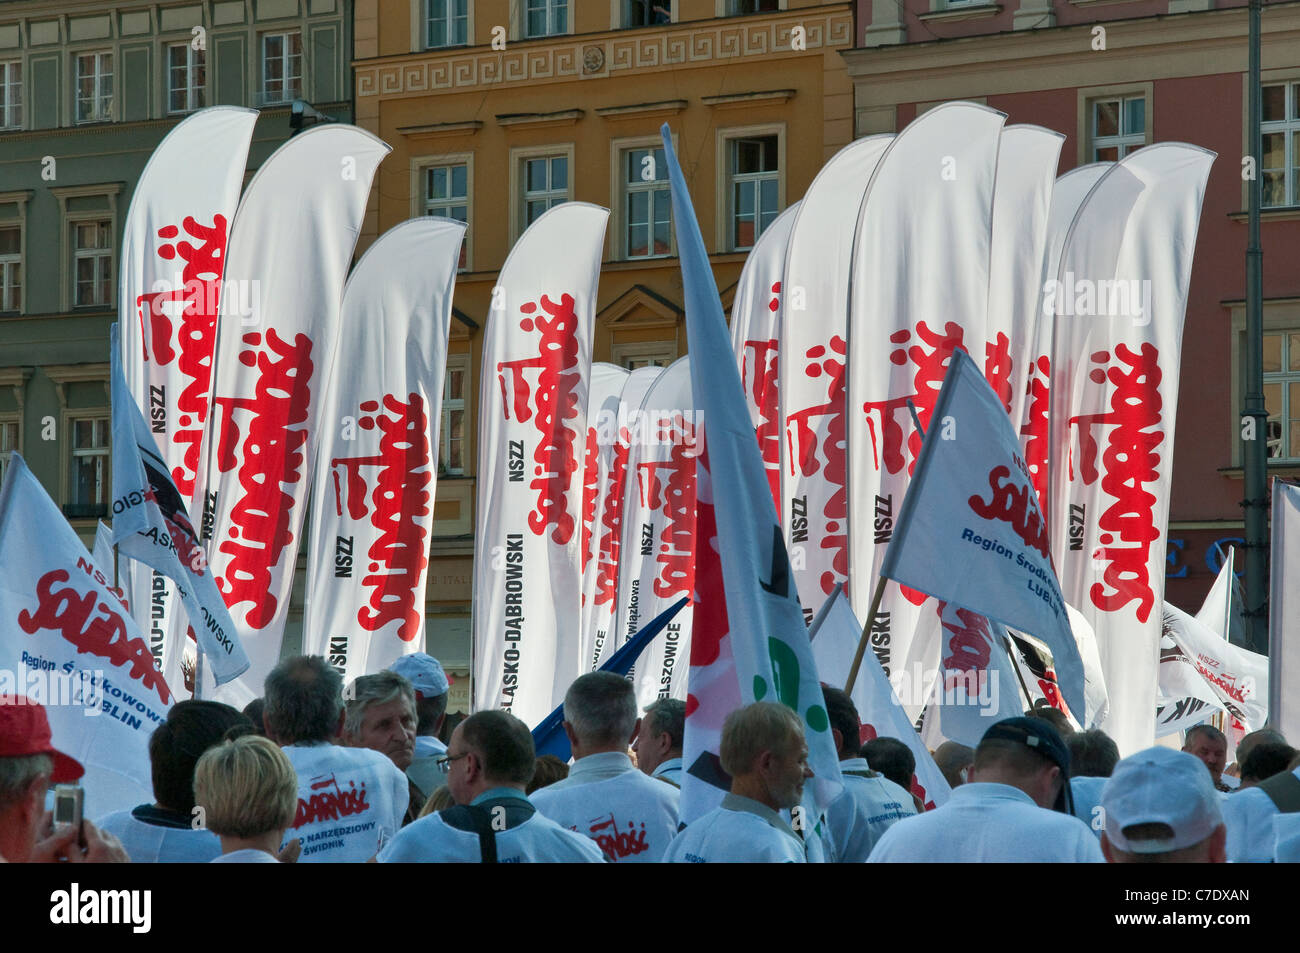 Des banderoles de solidarité, les syndicats européens démonstration pendant réunion des ministres des finances de l'UE sur Septembre 17, 2011 à Wroclaw Pologne Banque D'Images